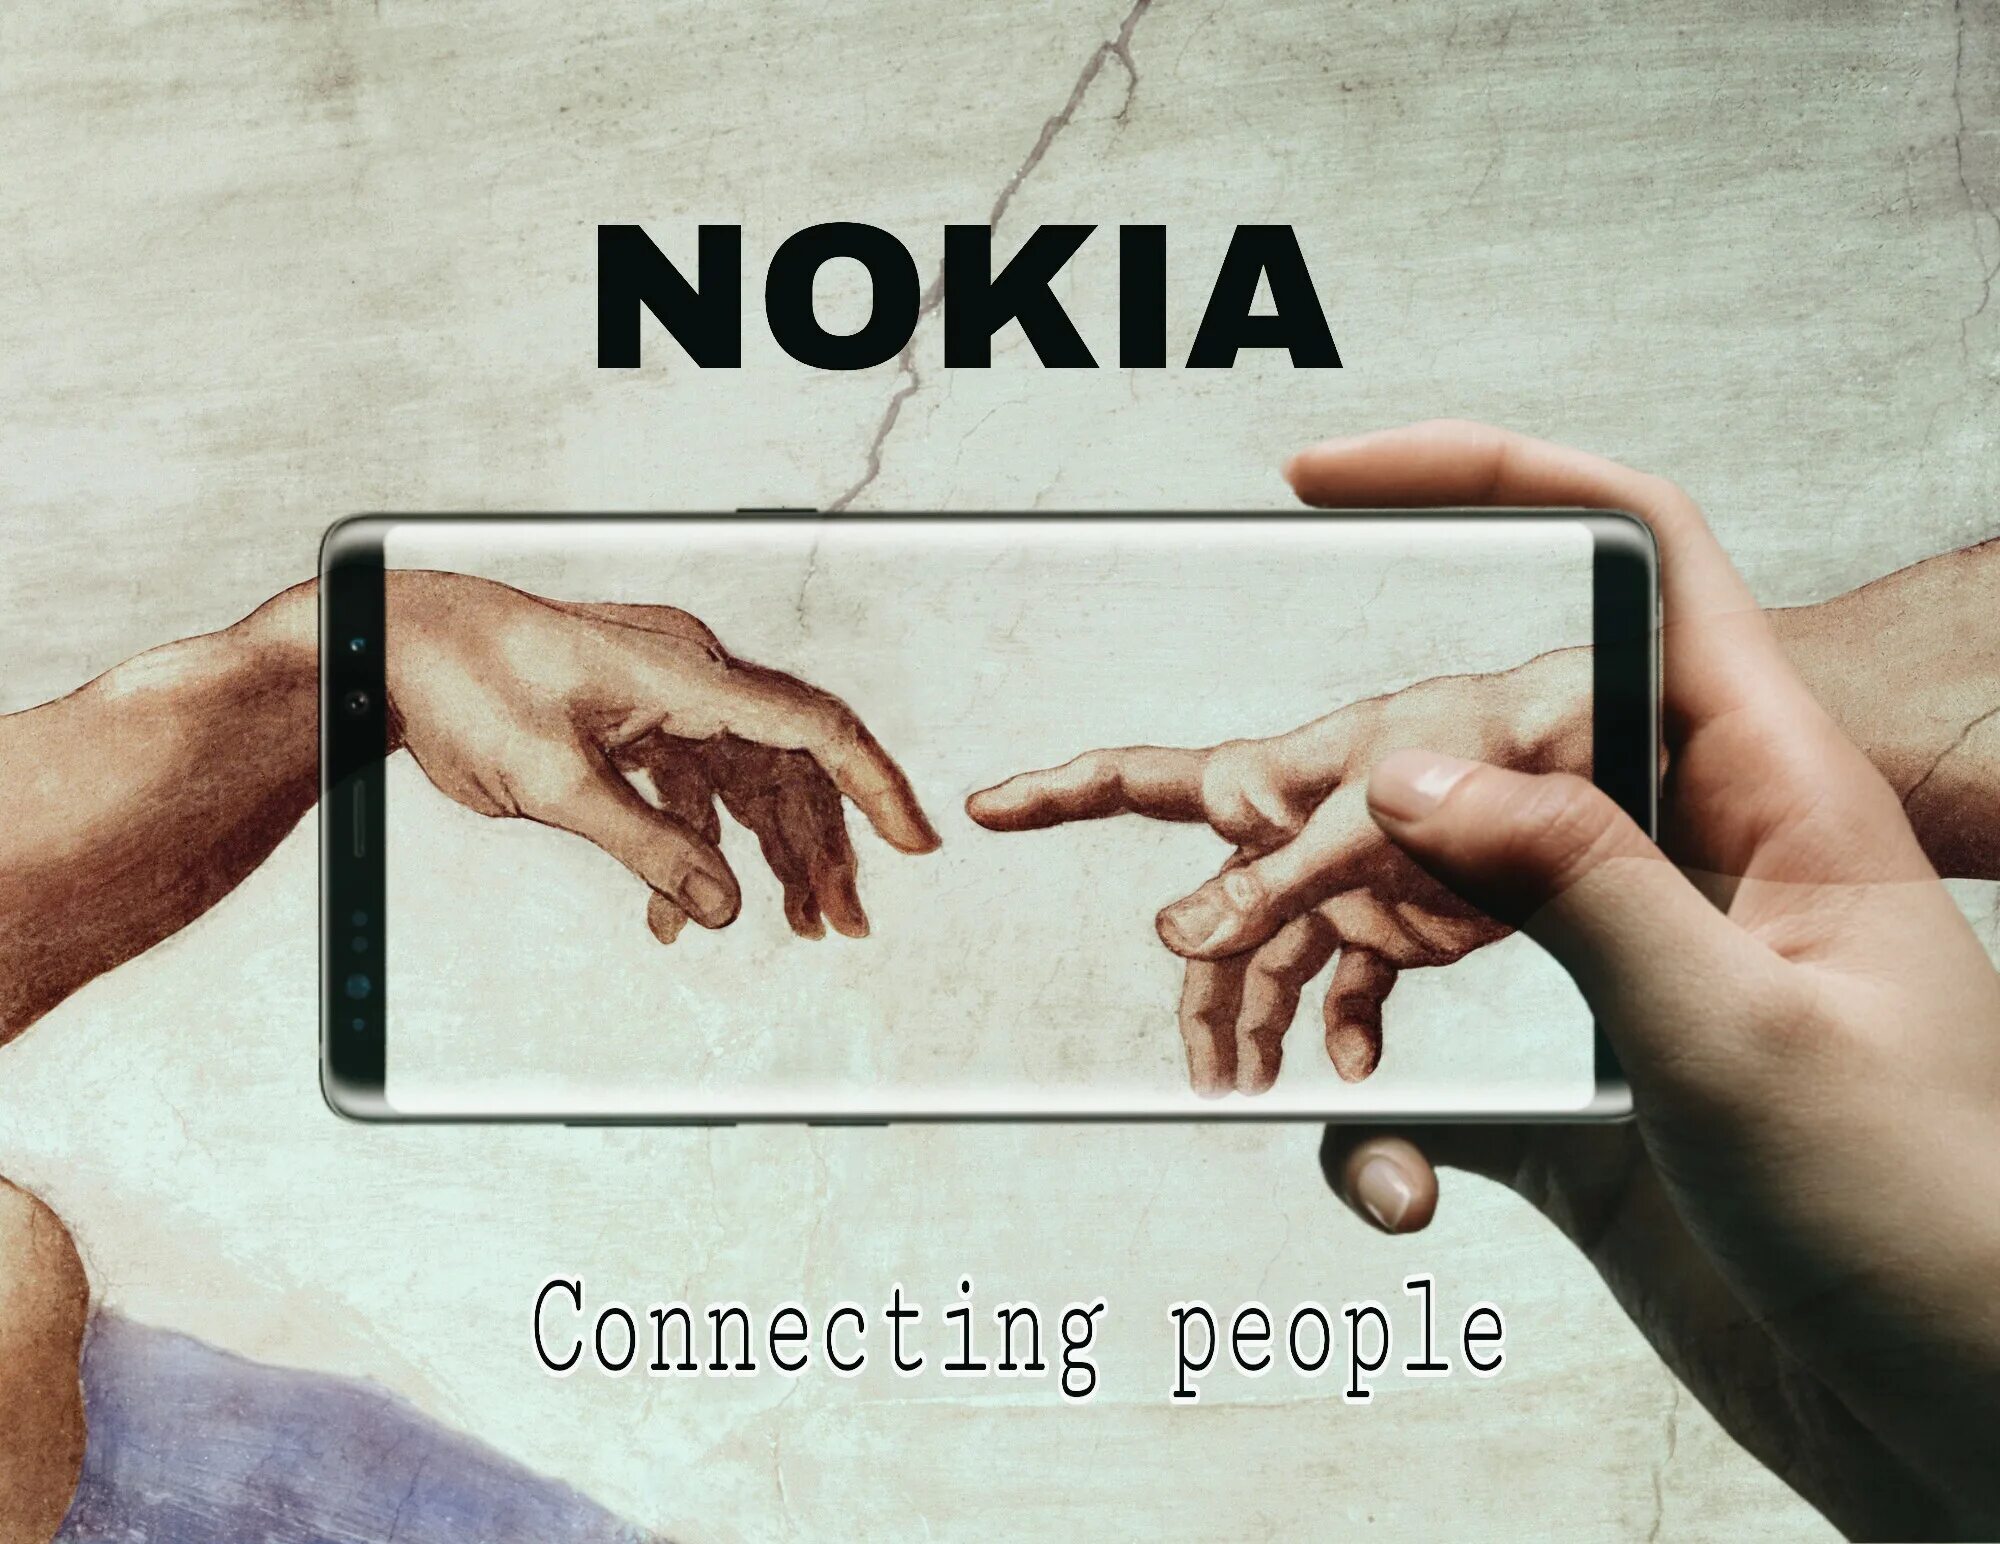 Нокиа руки. Нокиа connecting people. Nokia connecting people реклама. Nokia слоган. Connection people